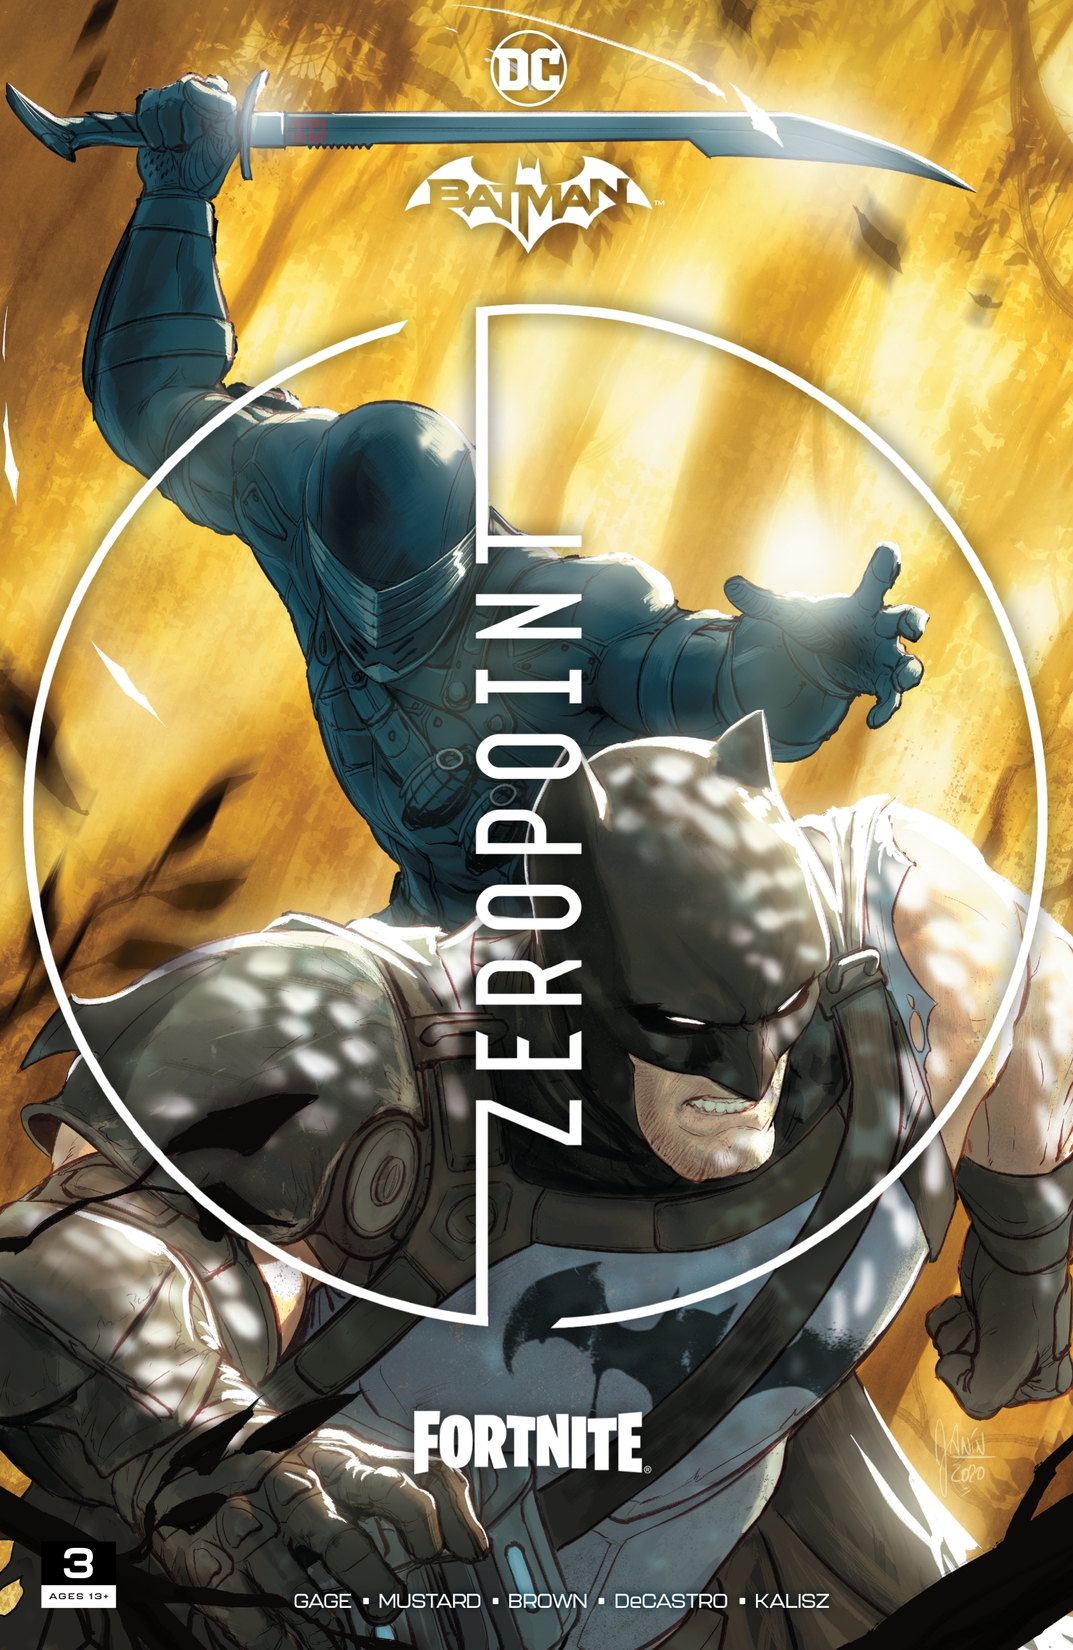 Batman/Fortnite: Zero Point #3 preview images